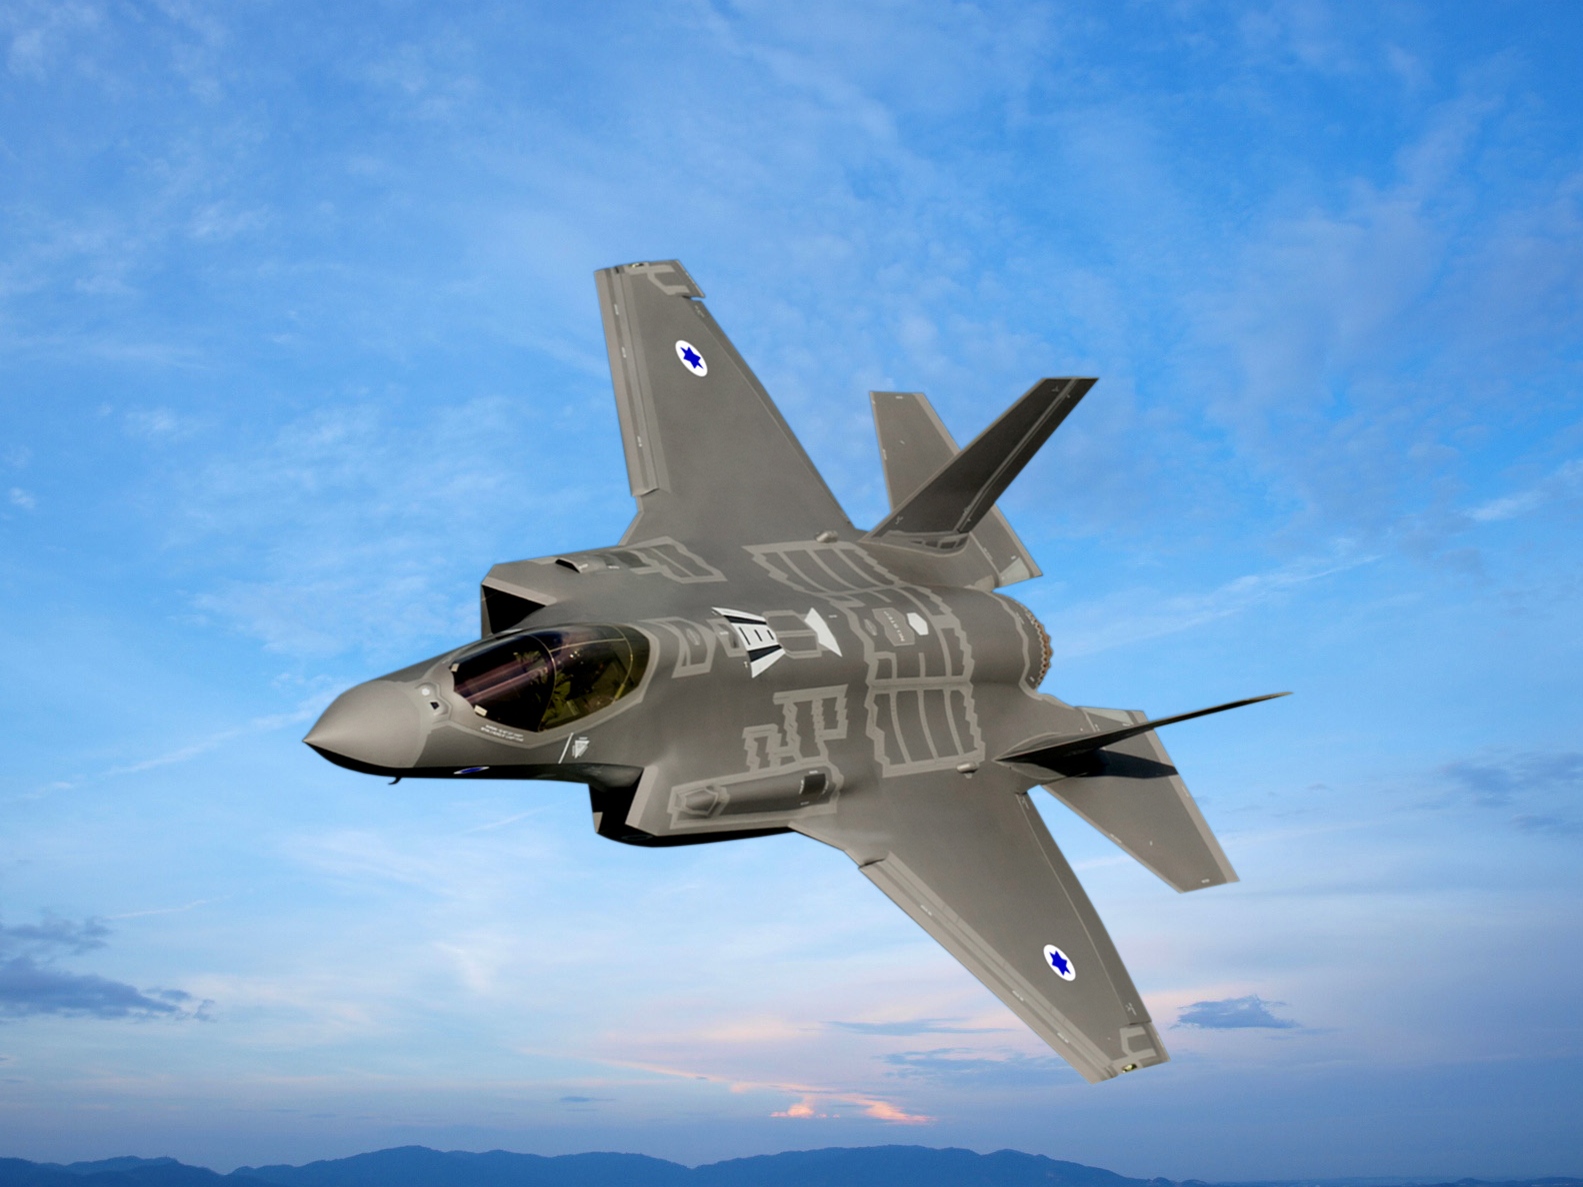 Новите американски изтребители F 35A които могат да носят ядрено